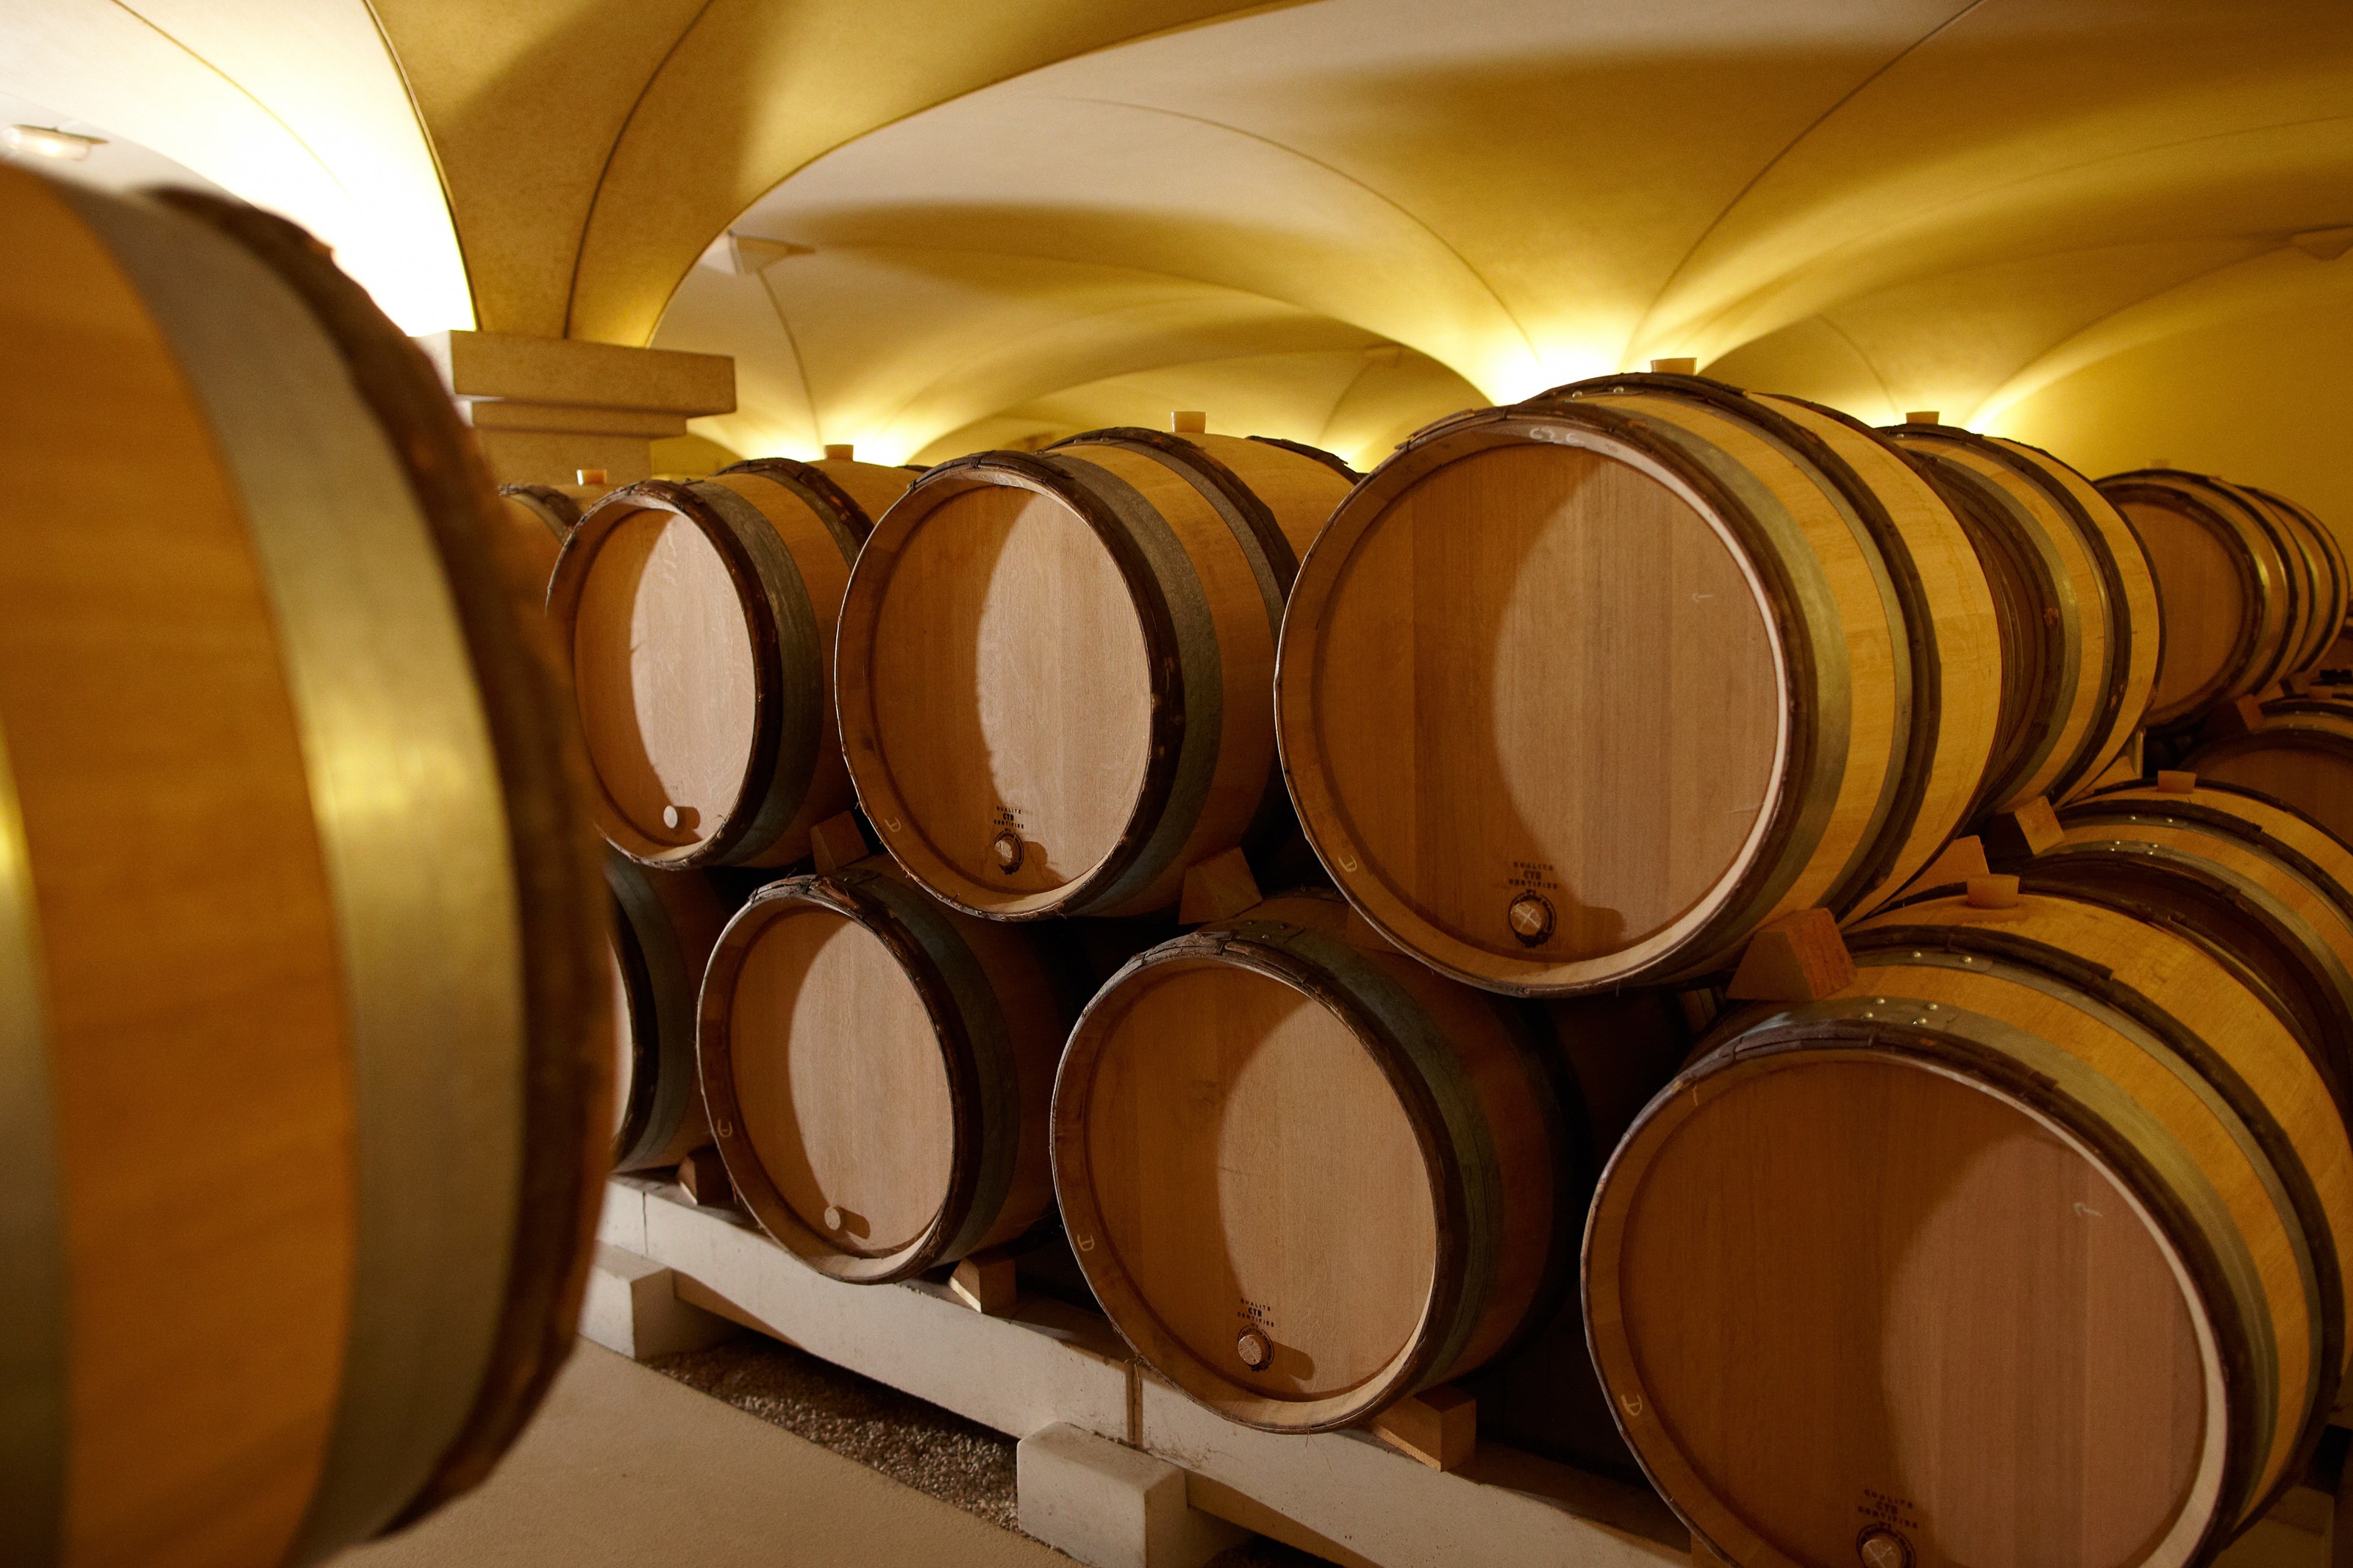 <p>Det produseres i dag n&aelig;rmere 50 forskjellige hvite viner i spennet mellom Bourgogne Blanc til Montrachet og i underkant av 30 r&oslash;de viner. I tillegg til &aring; produsere vin fra egne vinmarker, kj&oslash;per Girardin ogs&aring; inn druer fra ulike appellasjoner. Girardin produserer vin fra s&aring; godt som hele Burgund. Det kj&oslash;pte druematerialet behandles og vinifiseres p&aring; lik linje med druene fra egne eide vinmarker. Og de jobber tettere og tettere med sine leverand&oslash;rer for &aring; optimalisere druekvaliteten ogs&aring; for de vinmarker som de&nbsp;<em>ikke&nbsp;</em>eier selv. &Oslash;nologen Eric Germain har ytterligere optimalisert alle fasetter i kjelleren de siste 10 &aring;r.</p>
<p>Totalt sett produseres vin fra rundt regnet 60 appellasjoner, og samlet produksjon i dag ligger p&aring; ca. 500 000 flasker vin. Virksomheten drives siden midten av 1990-tallet fra nye produksjonsfasiliterer i utkanten av kommunen Meursault, noen f&aring; kilometer syd for Beaune. Vinstilen hos Girardin er moderne, aromatisk &aring;pen, fruktig og terroirtypisk samtidig som vinene utvikler seg langsomt og lagrer godt. Det nedlegges mye arbeid for at hver enkelt vin skal f&aring; et mest mulig genuint terroirtypisk uttrykk snarere enn en generell produsentkarakter, noe som kan v&aelig;re en fare n&aring;r mange ulike viner produseres av samme produsent p&aring; tiln&aelig;rmet samme tekniske m&aring;te.</p>
<p>Eric Germain er n&oslash;ye med at hver enkelt vin f&aring;r en s&aelig;rskilt behandling gitt druematerialets muligheter og begrensninger. Det forhold at tiden hver enkelt vin gj&aelig;rer og modnes p&aring; barriques har g&aring;tt ned i de senere &aring;rene, bidrar ytterligere til &aring; forsterke forskjellene mellom de ulike jordsmonnene og vinene. Gjennom historien har Vincent testet ut en rekke ulike moderne vinifikasjonsteknikker, men rundt i &aring;rene rundt 2010 konkluderte han med at det enkle var det beste n&aring;r m&aring;let var &aring; skape mest mulig terroirdrevne og komplekse viner; med andre ord, minst mulig inngripen i vinifikasjonen. Vinene lages derfor p&aring; tradisjonelt vis med spontanfermentering og lang modning med bunnfallet p&aring; eikefat fra de beste skogene i Frankrike. Andelen ny eik holdes s&aring; lav som mulig, og m&aring;nekalenderen f&oslash;lges i alle deler av vinifikasjonen.&nbsp;</p>